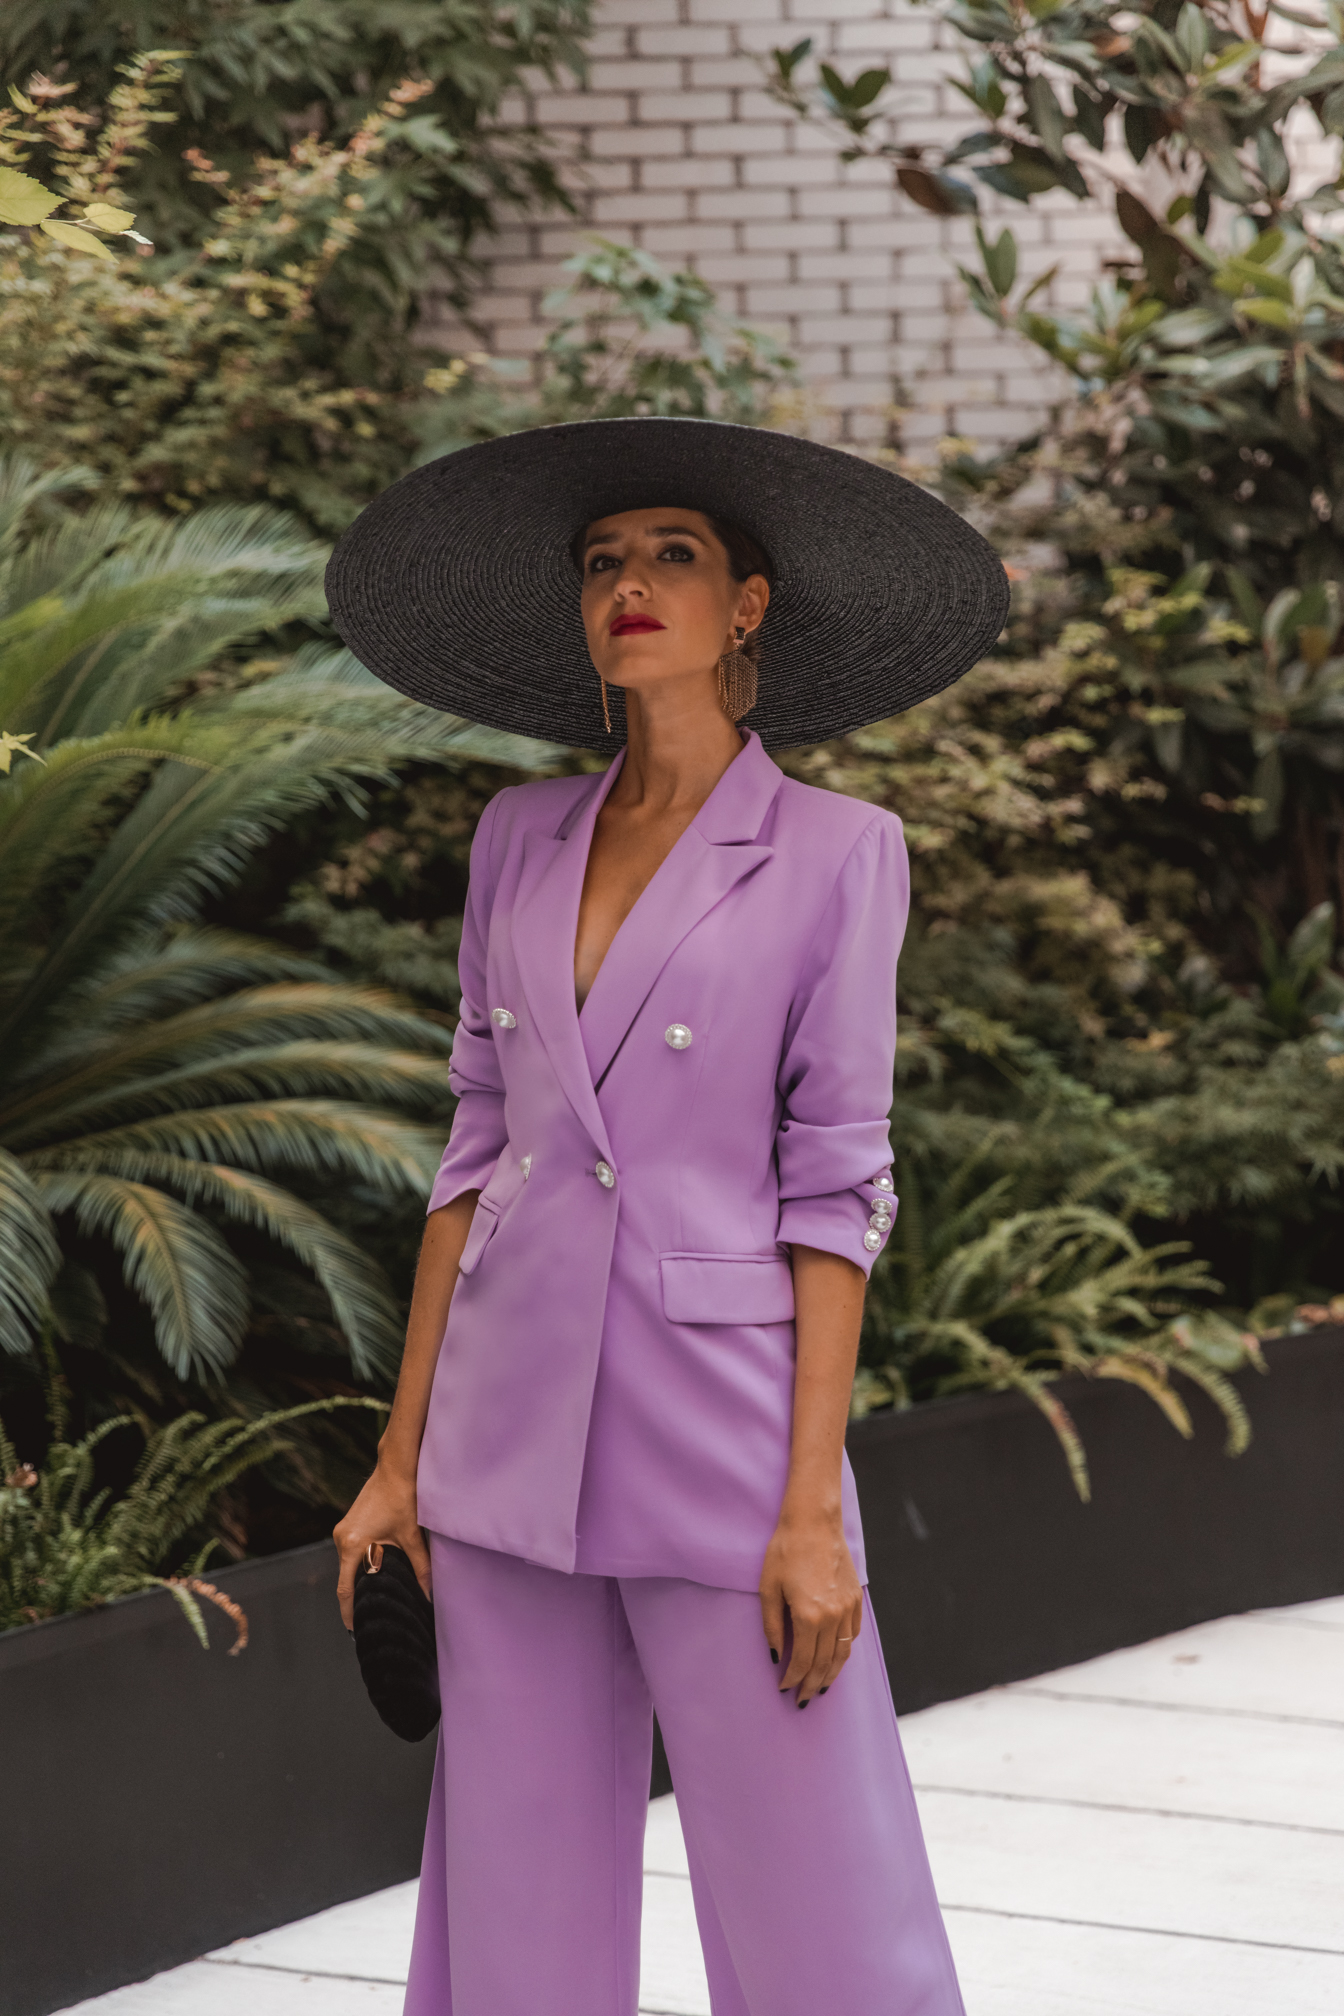 futuro sabio Experto Look de invitada: traje chaqueta lila para invitadas